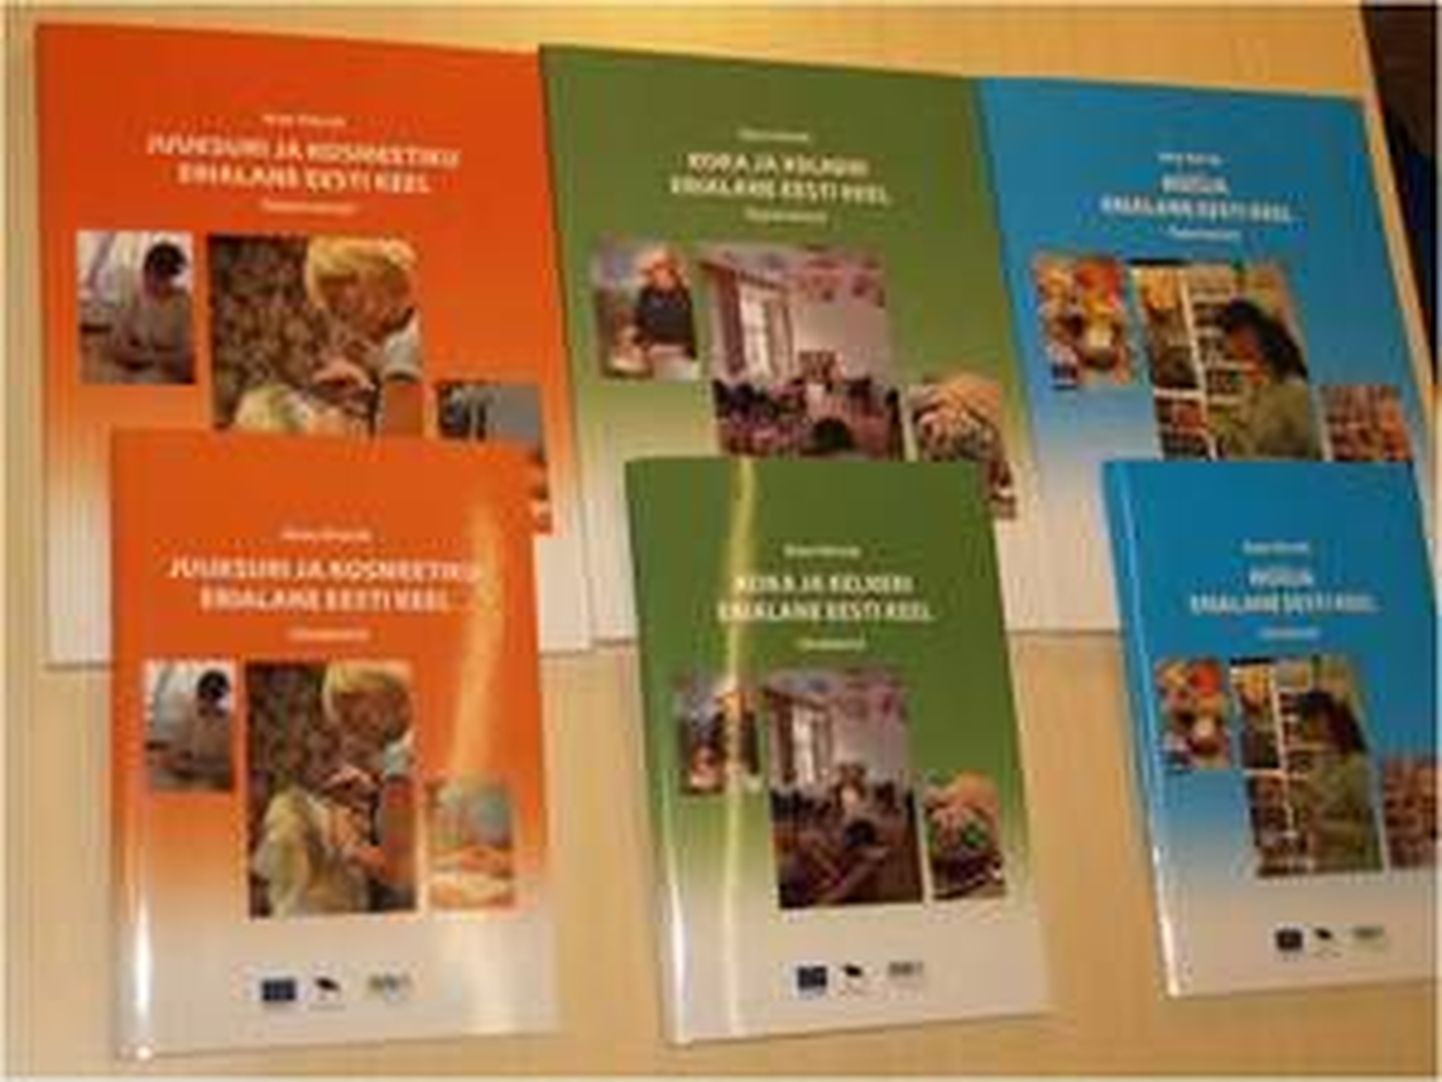 Материалы по профессиональному эстонскому, выпущенные при поддержке Фонда интеграции.